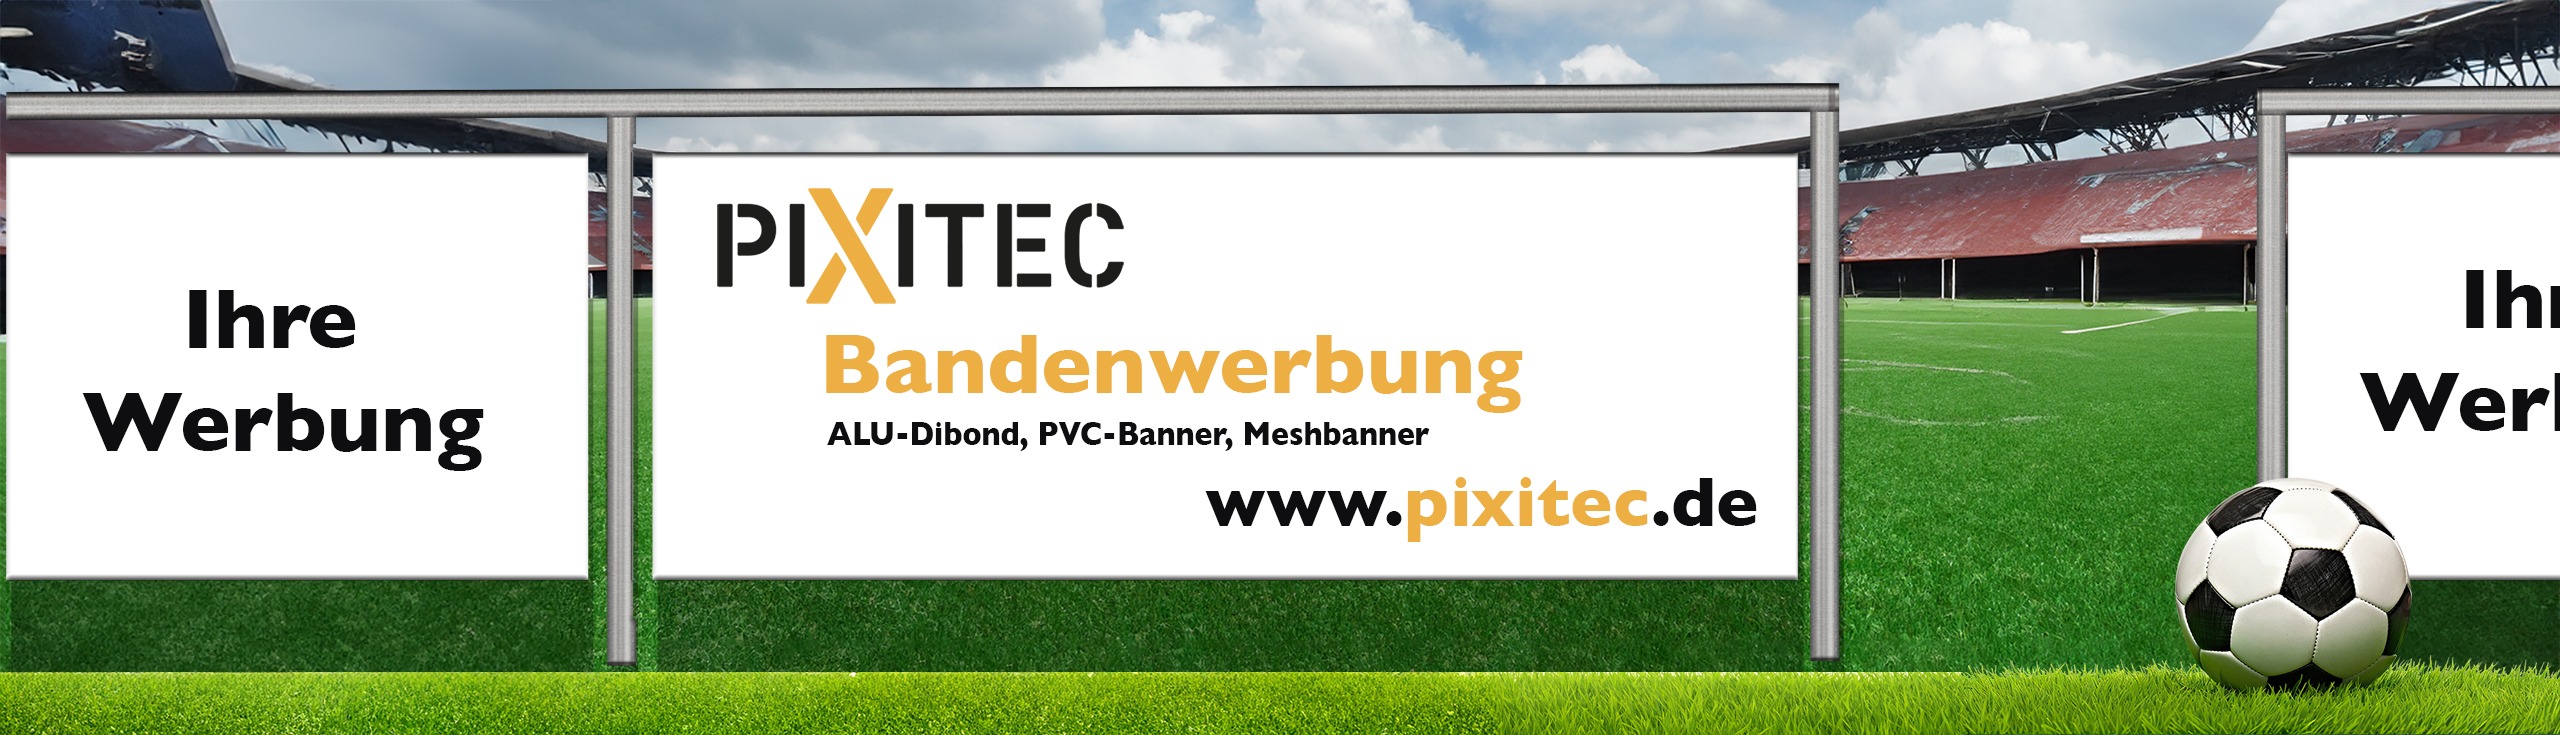 www.pixitec.de | Bandenwerbung | UV-Direktdruck Hattert | Wahlrod Westerwald